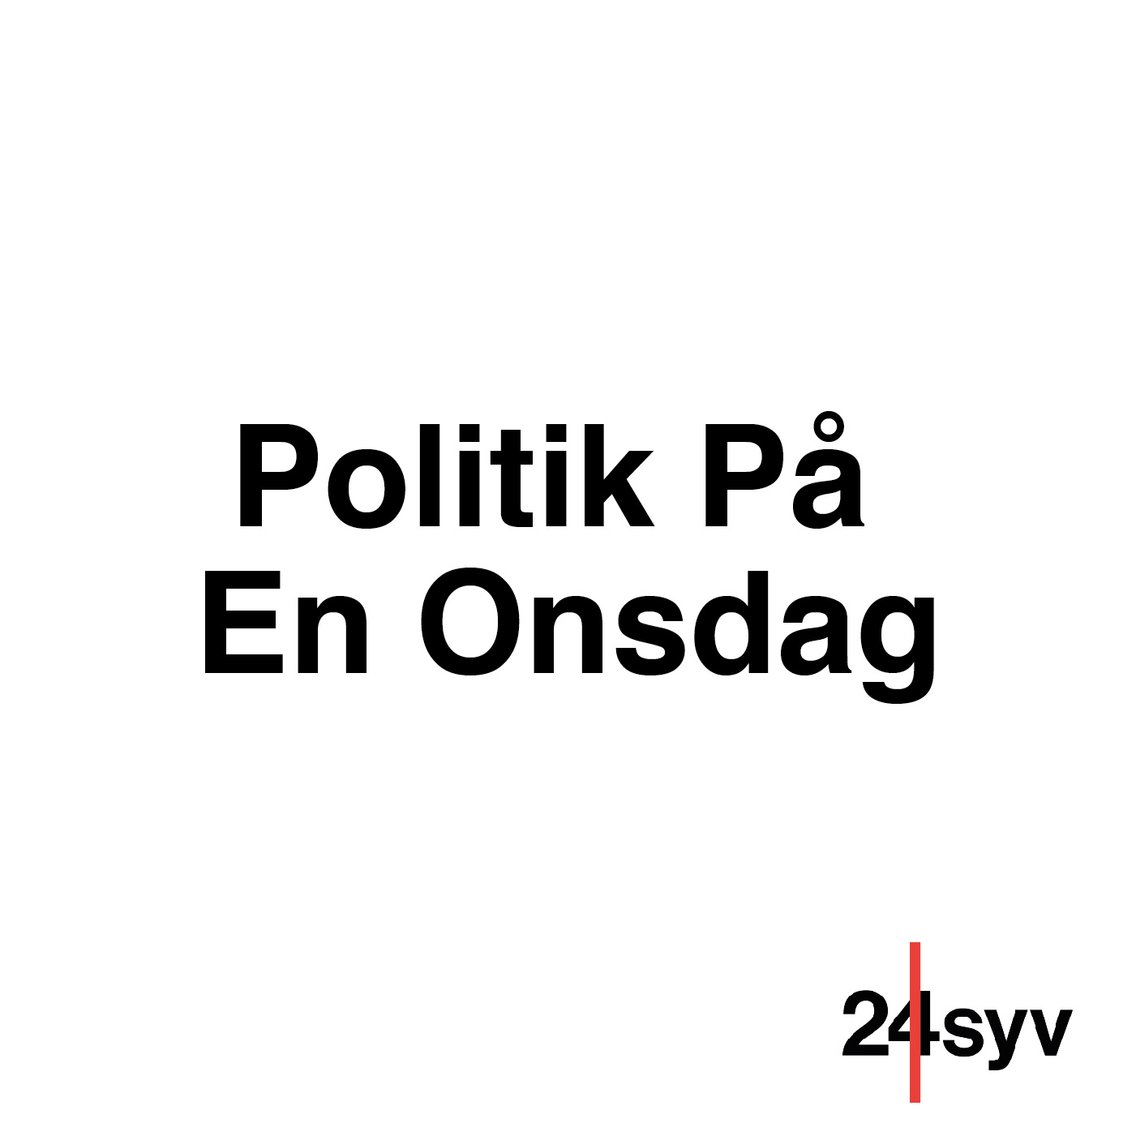 Politik På En Onsdag - Cover Image